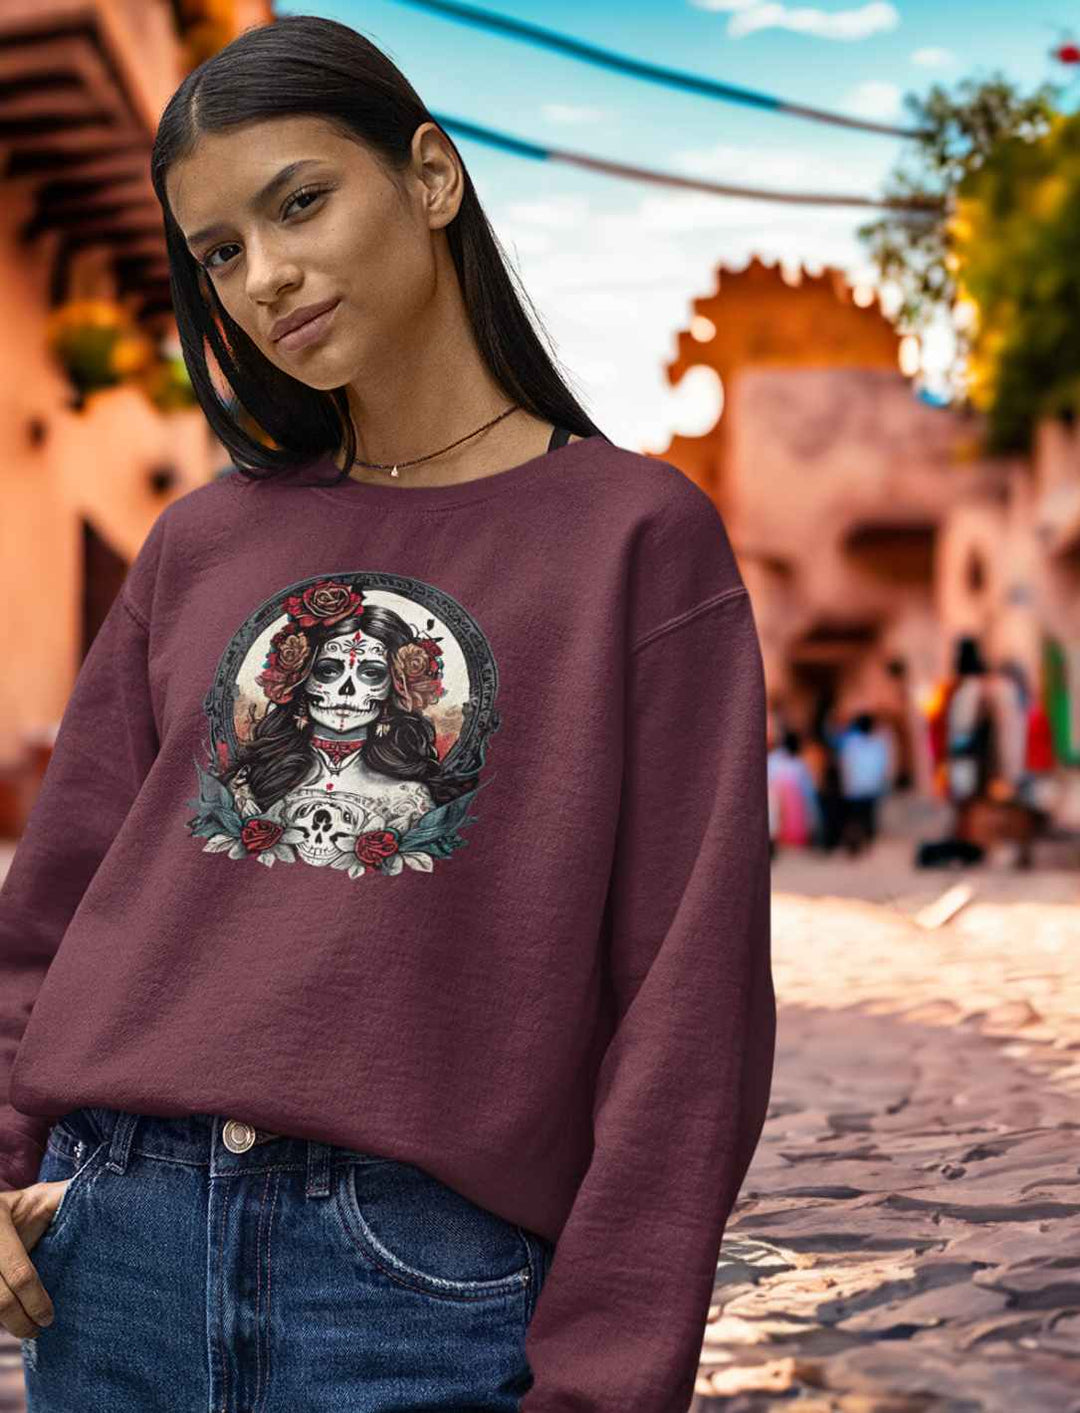 Junge Frau im Burgund La Catrina Organic Sweatshirt, stehend auf einer malerischen mexikanischen Straße während des Dia de los Muertos – Runental.de